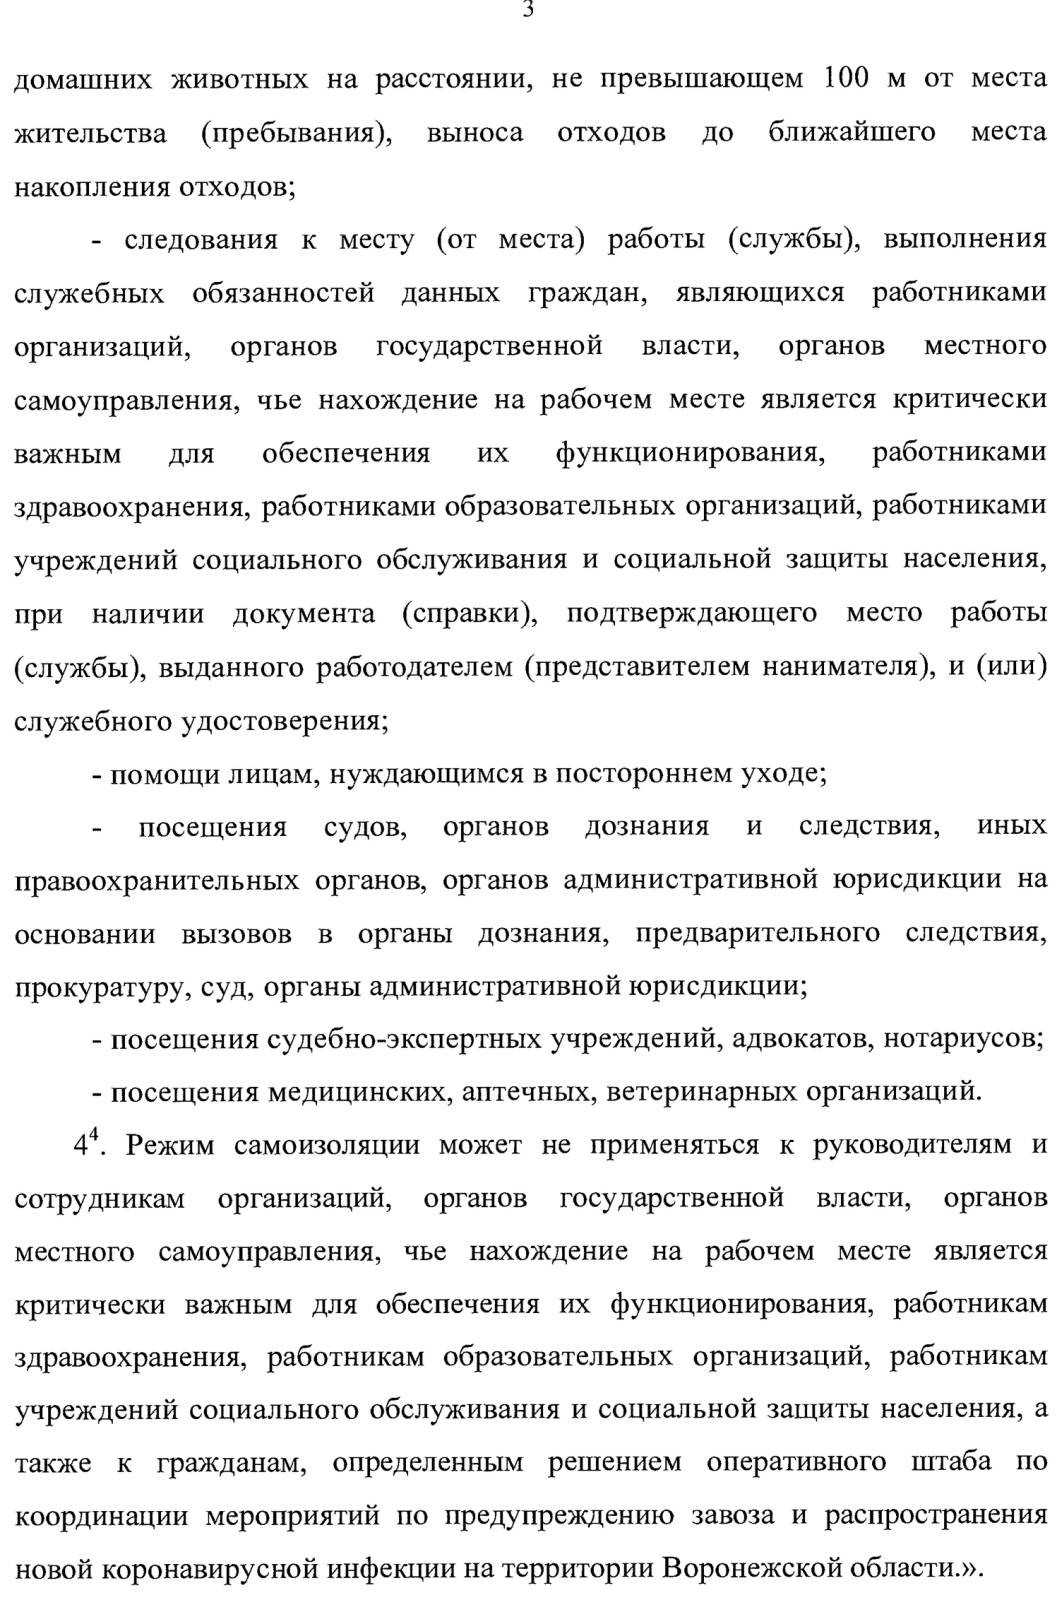 Указ о новых ограничительных мерах для борьбы с коронавирусом в Воронежской области: